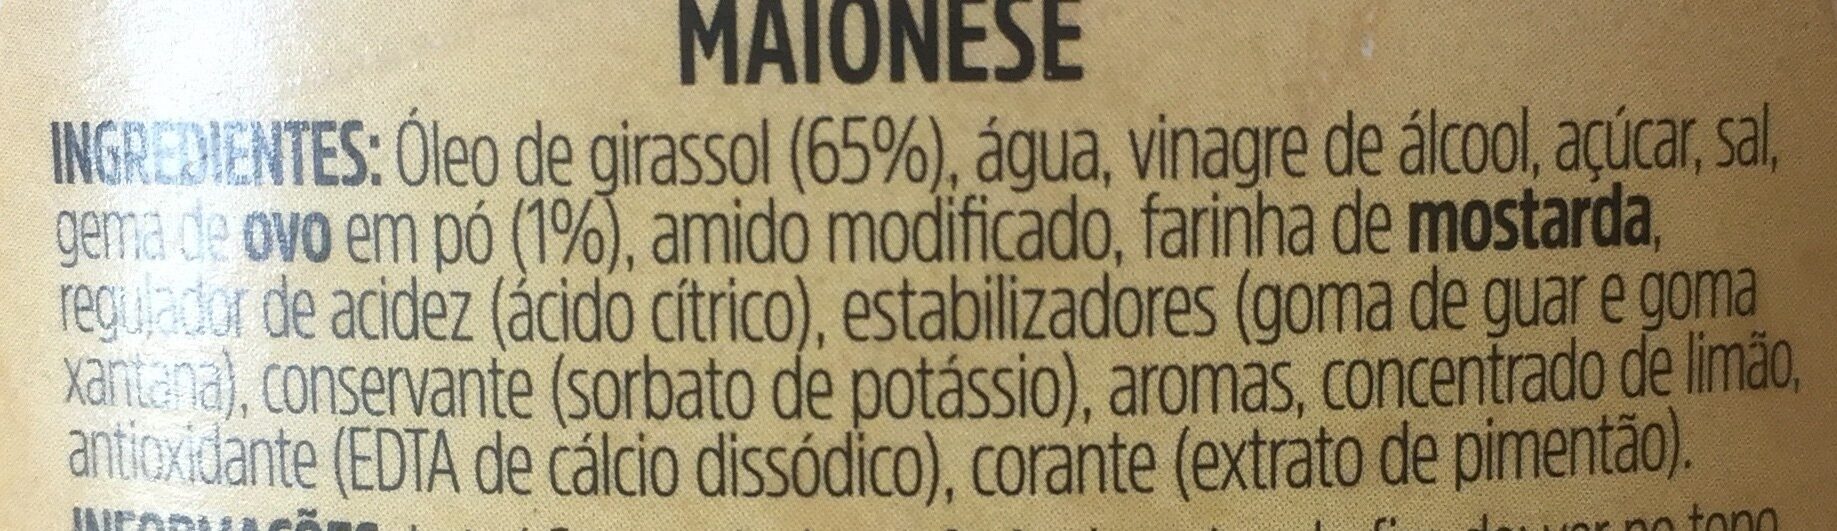 Maionese - Ingredientes